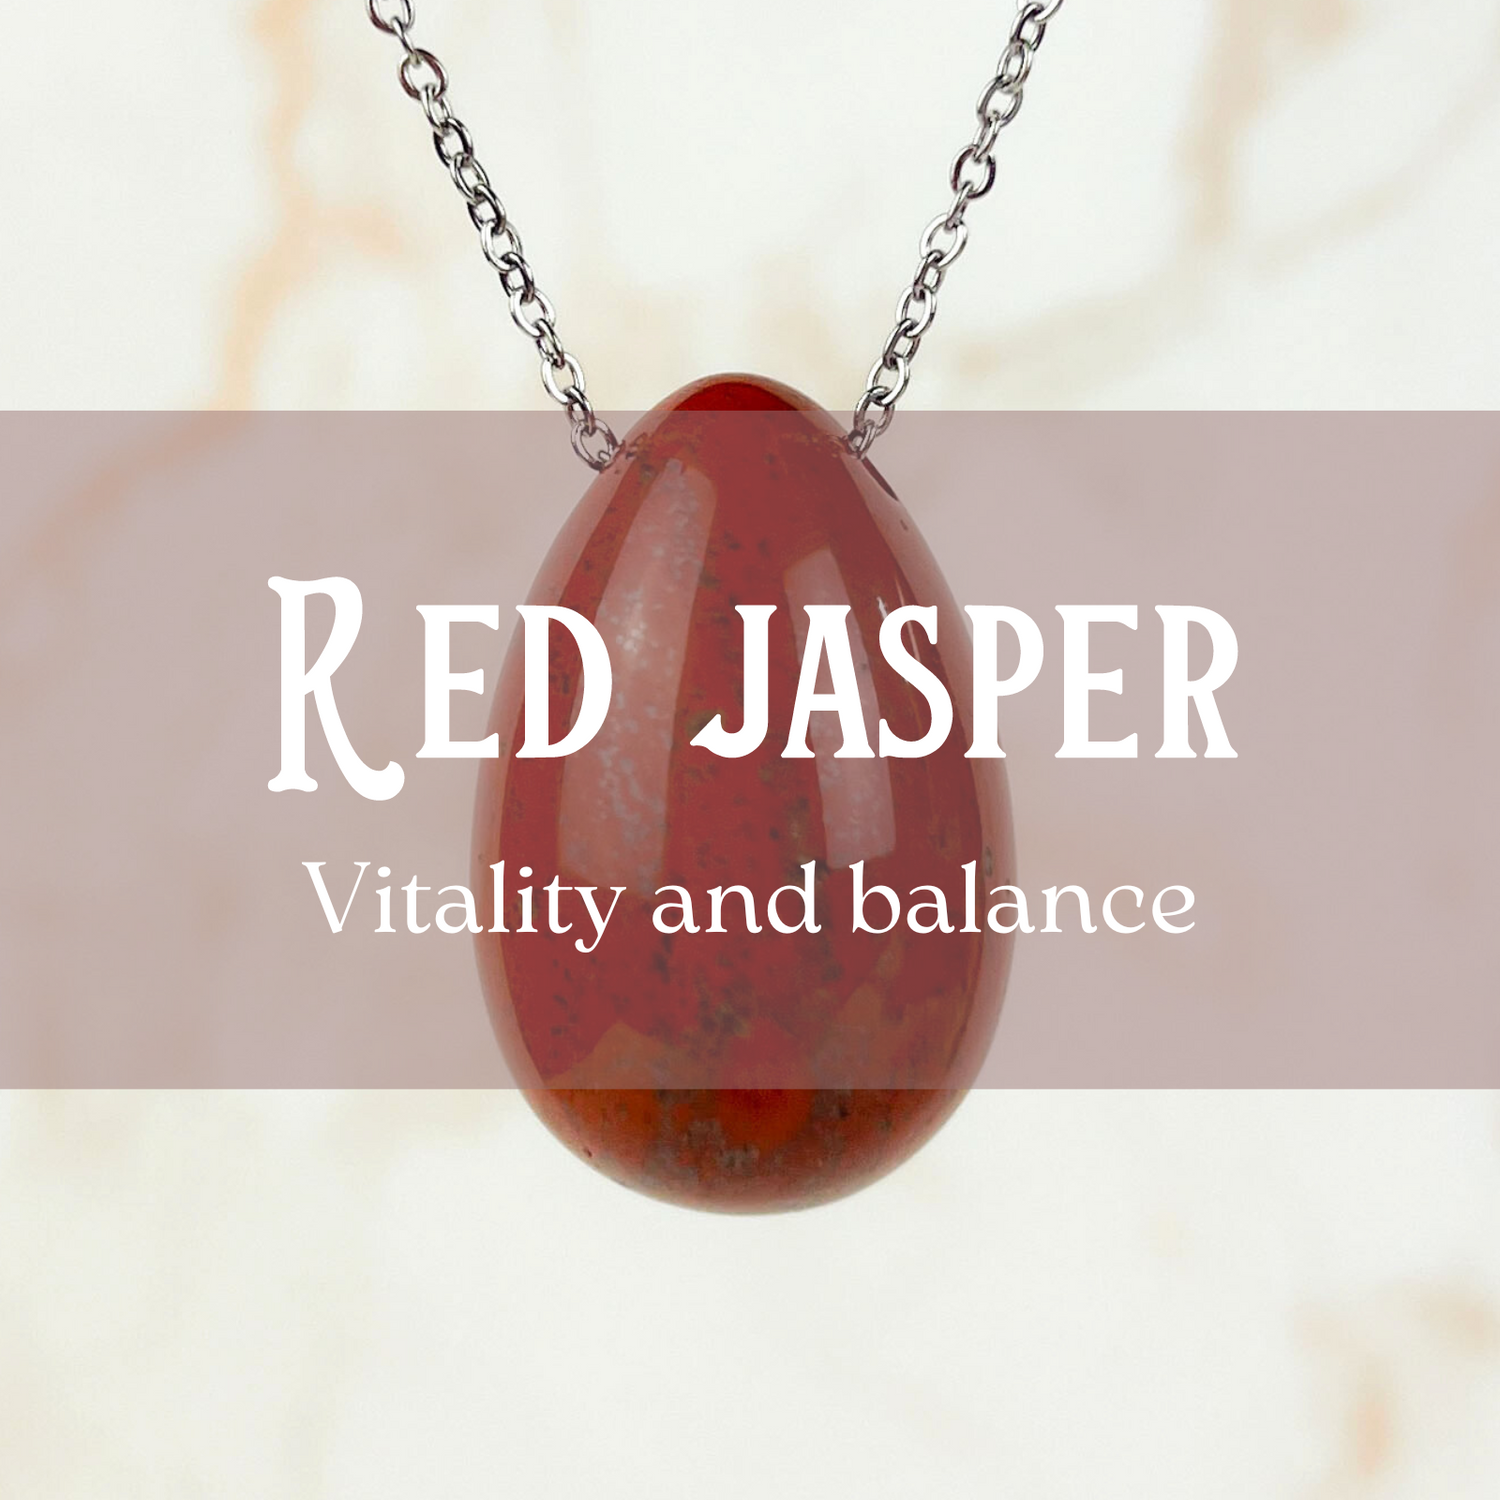 Red jasper jewelry